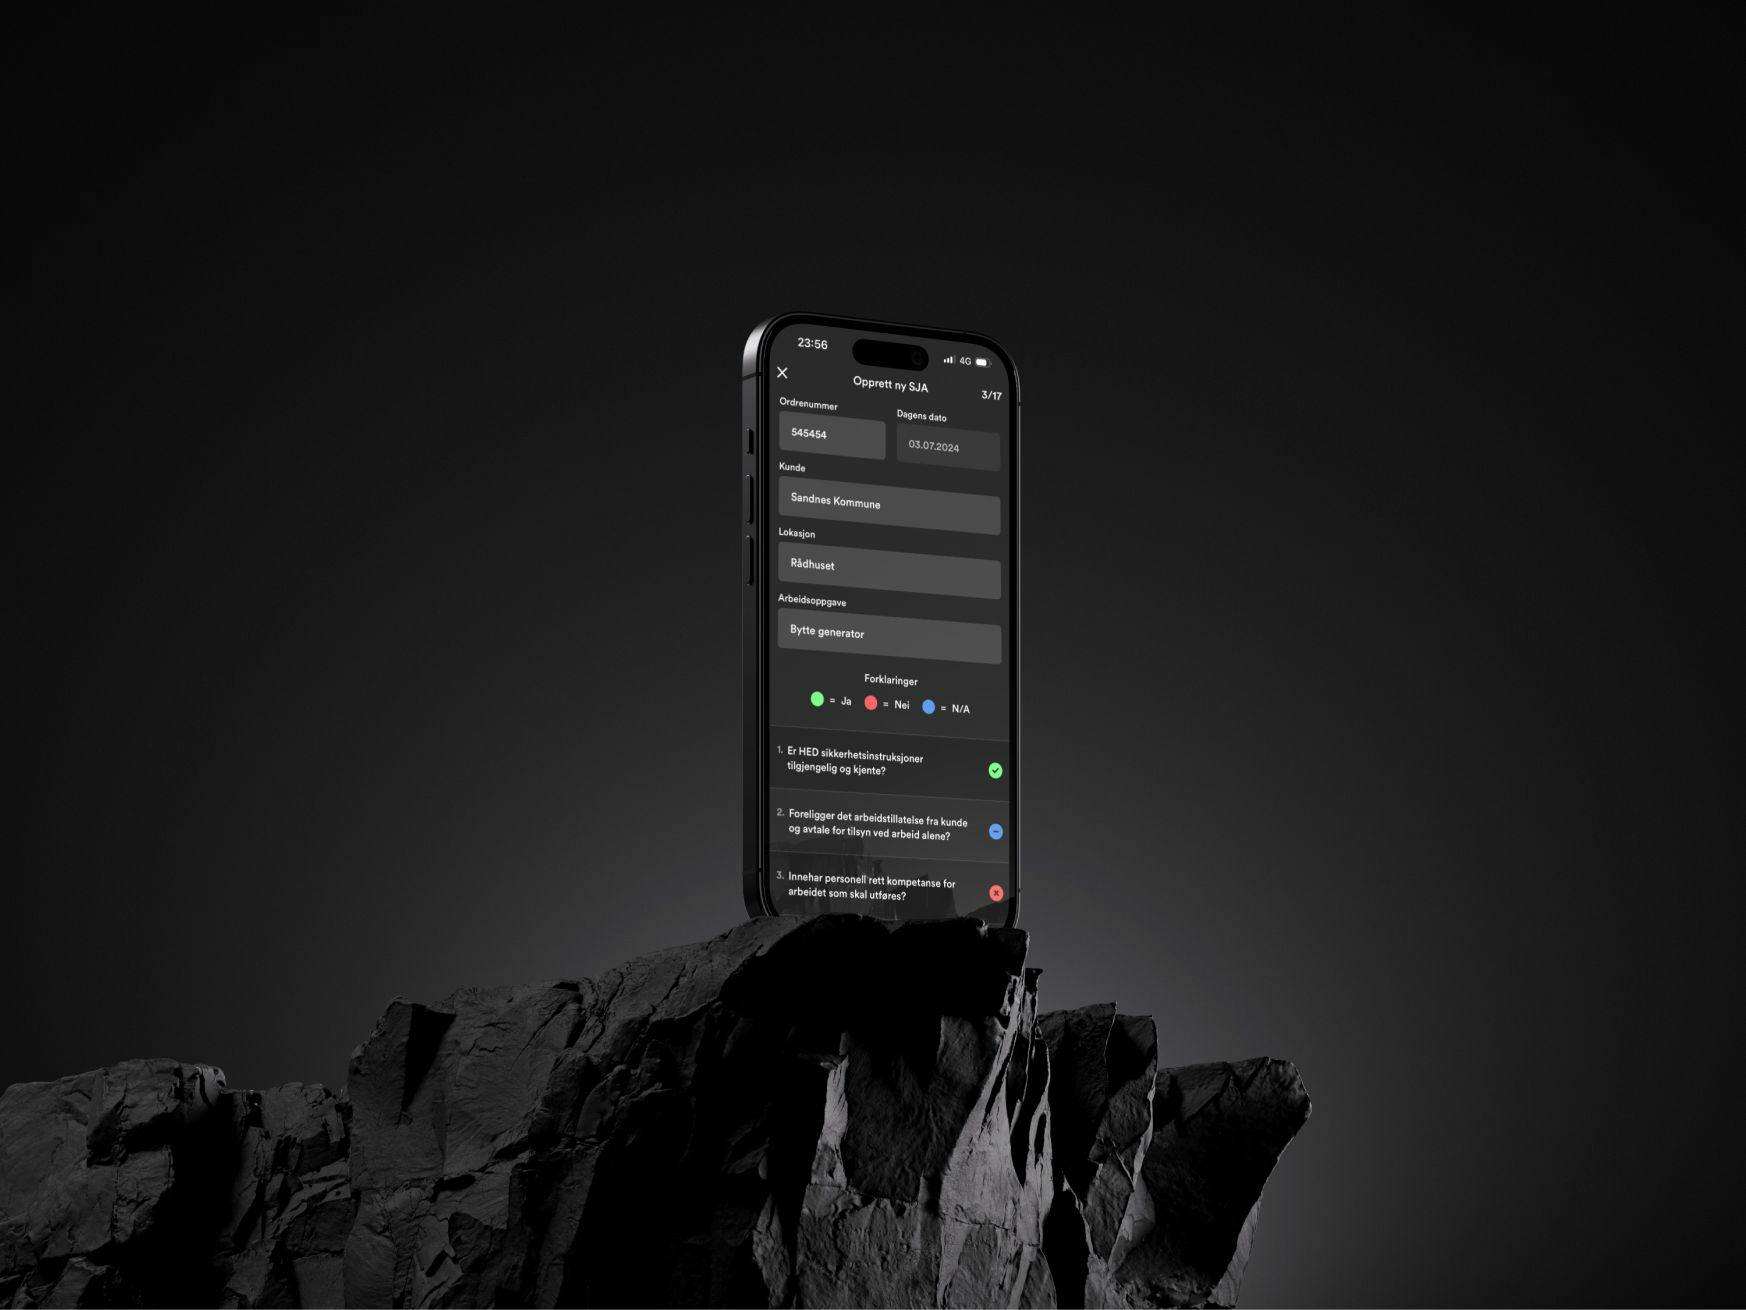 Stående iPhone oppå svarte steiner.